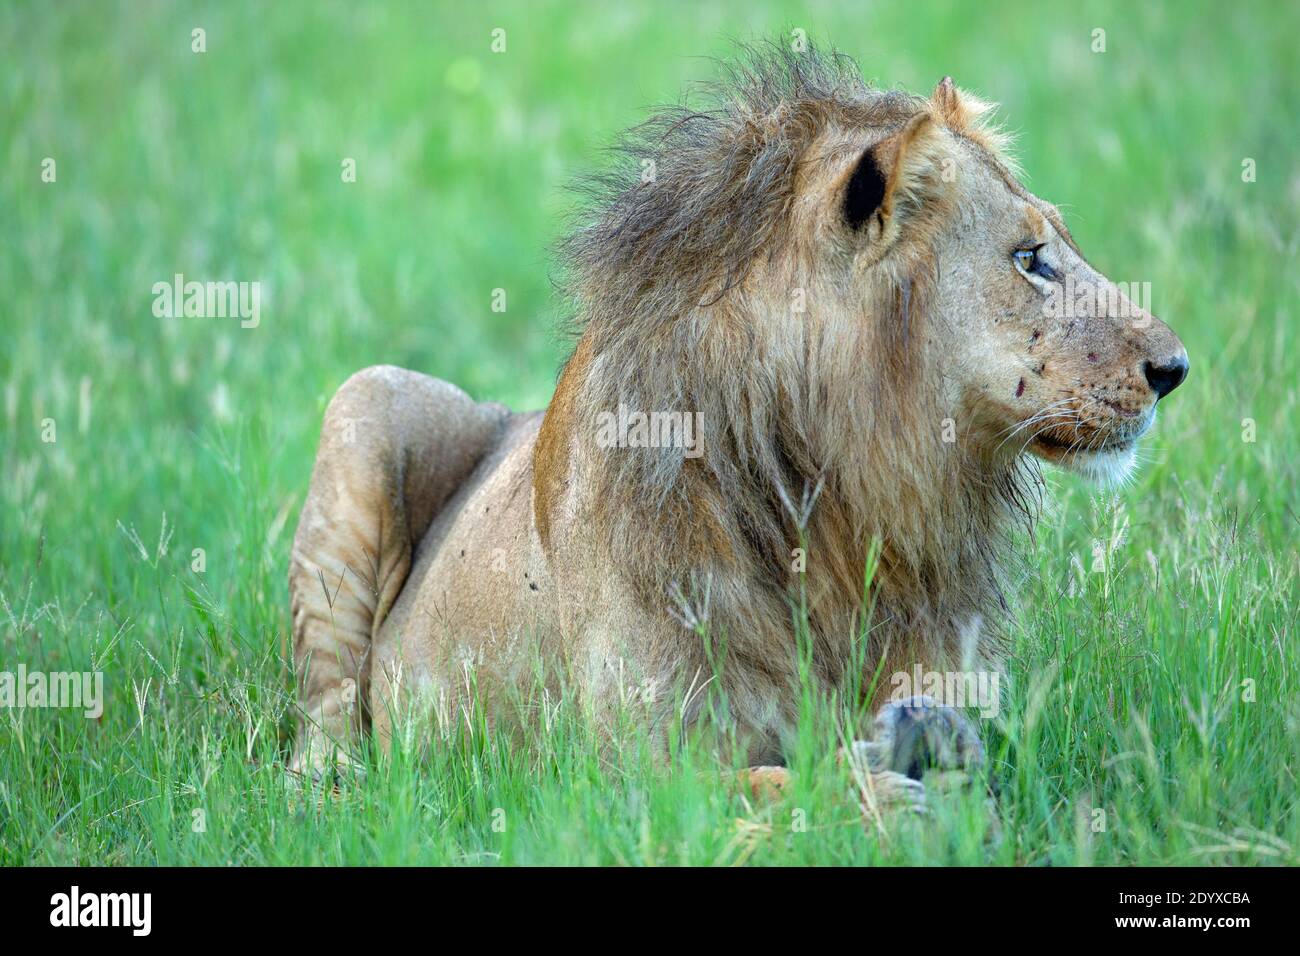 Afrikanischer Löwe (Panthera leo). Alt, älter, männlich, in scheinbar schlechter körperlicher Verfassung. Zottelige, dünne Haarmähe, vernarbtes Gesicht sind Indikationen. Kontinu Stockfoto